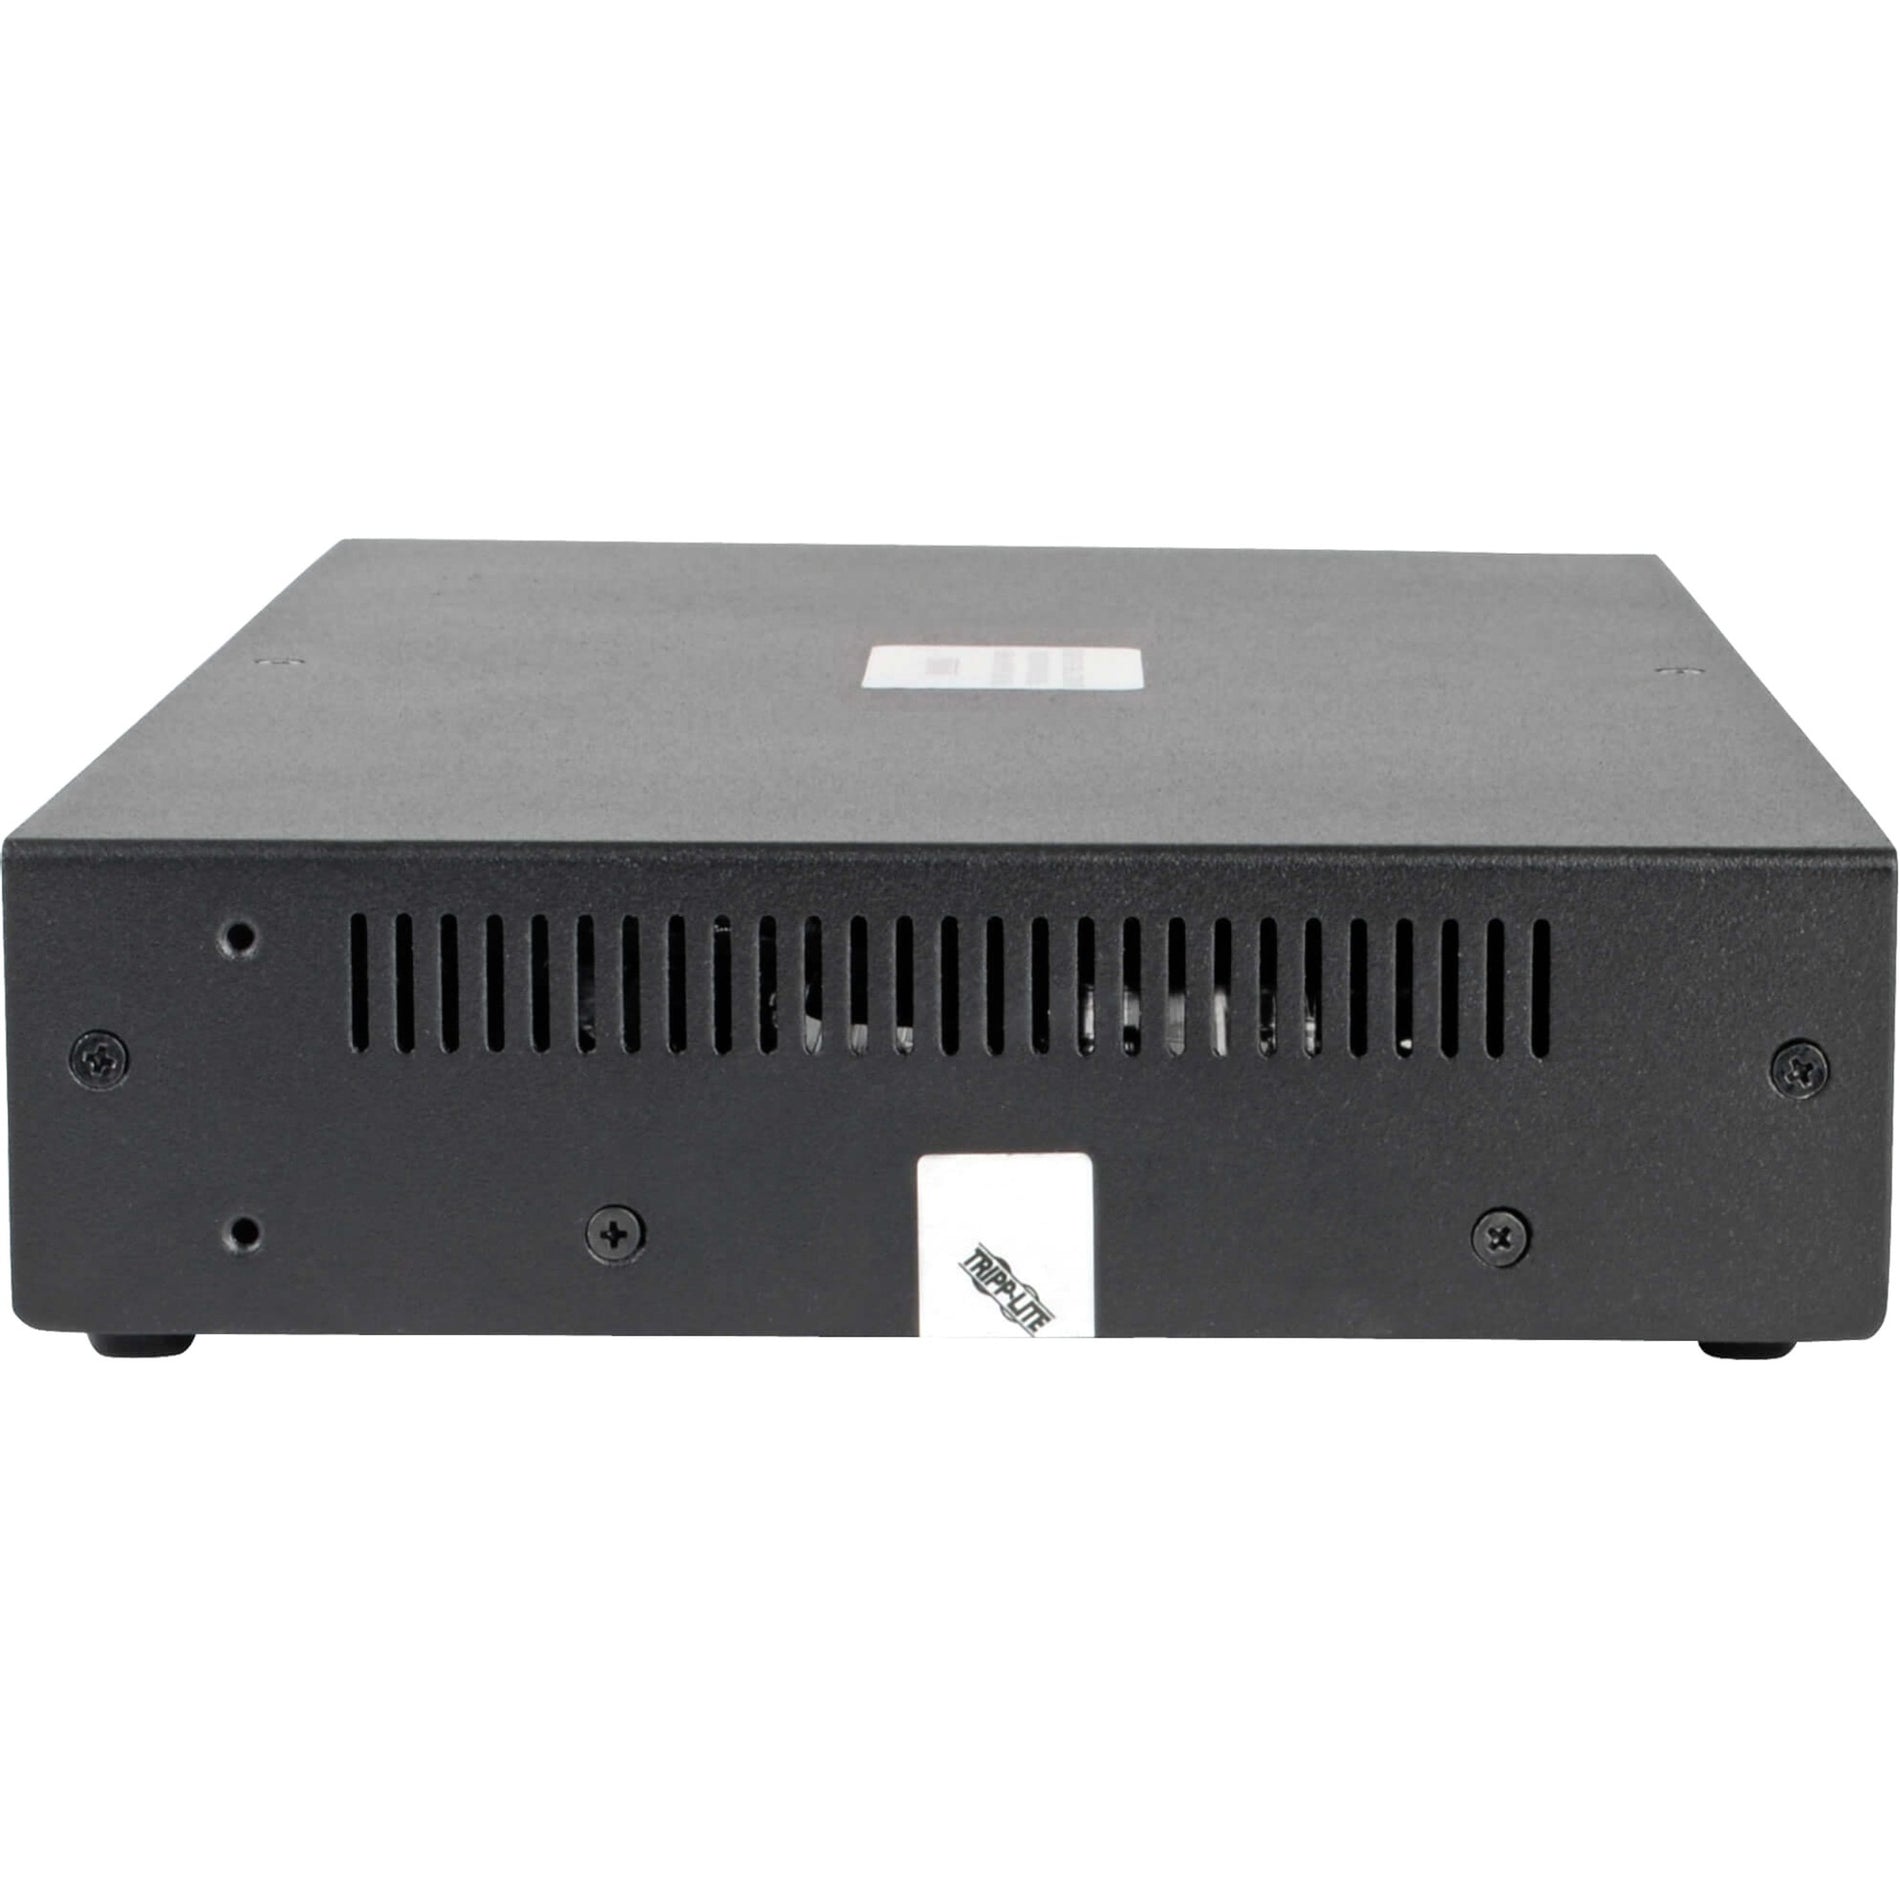 تريب لايت B002-DV1A4 4-منفذ NIAP PP3.0 معتمد DVI-I مفتاح KVM ، دقة الفيديو القصوى 2560 × 1600 ، ضمان لمدة 3 سنوات